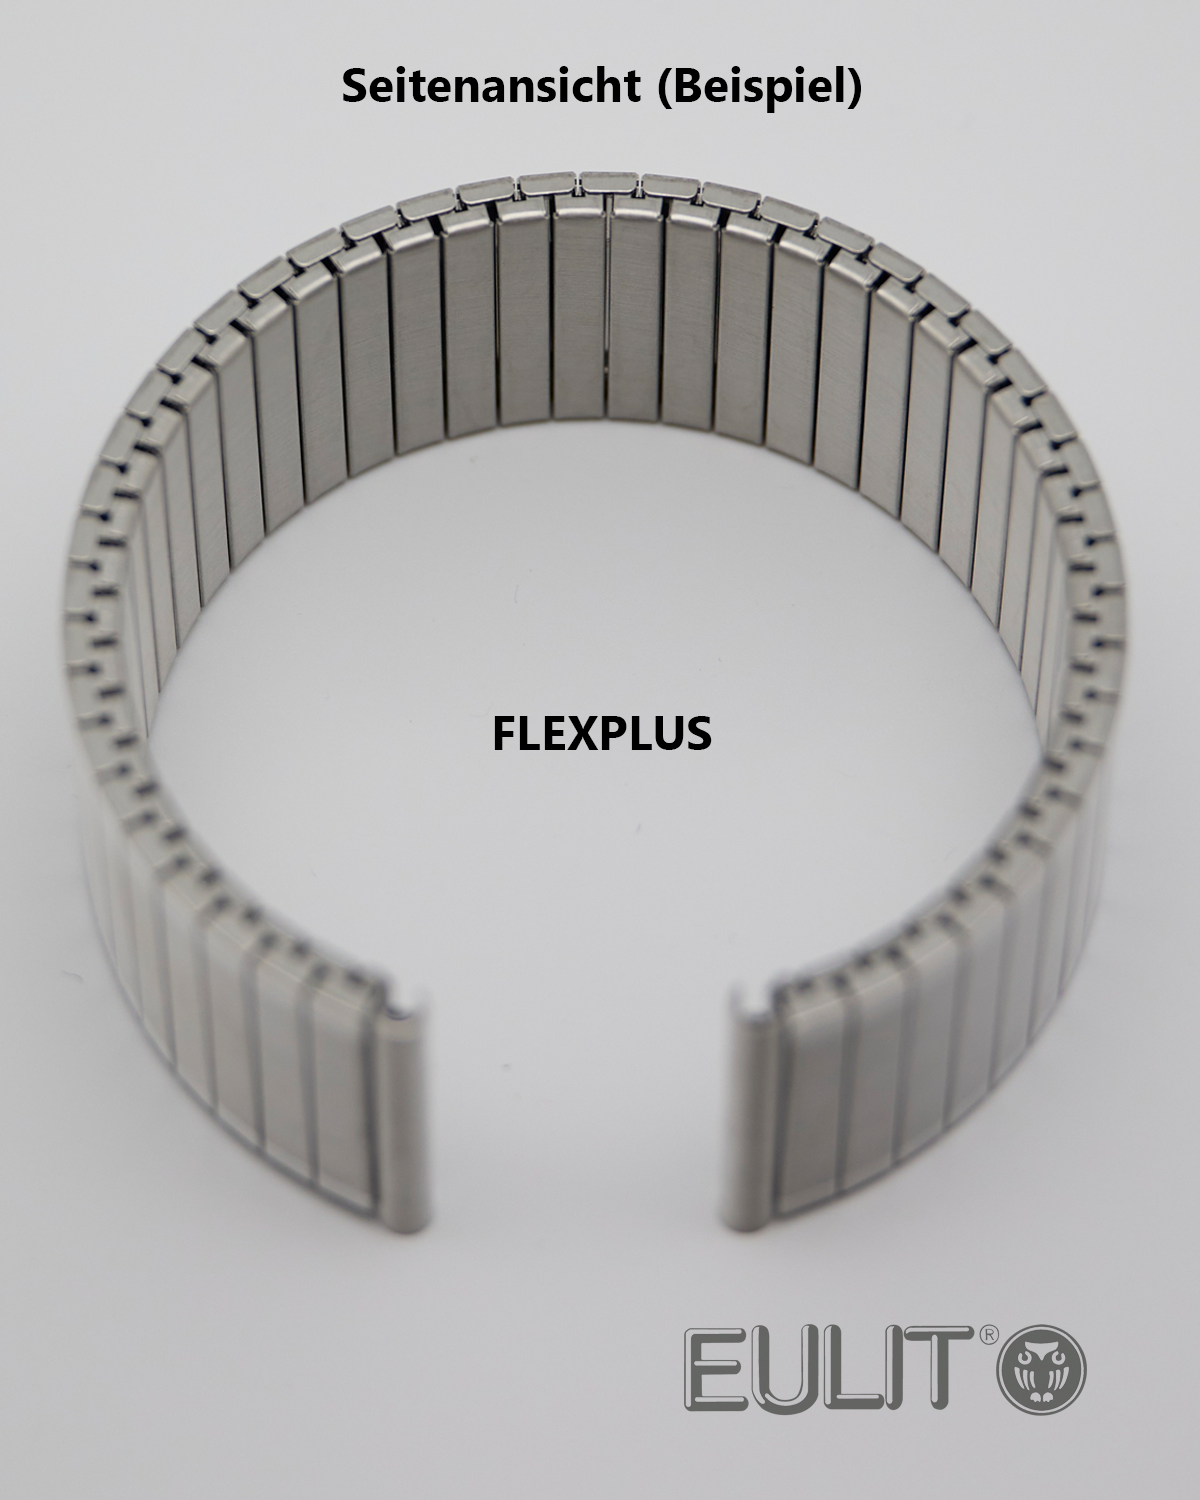 71-3105 EULIT FLEXPLUS 12-14 mm Bicolor